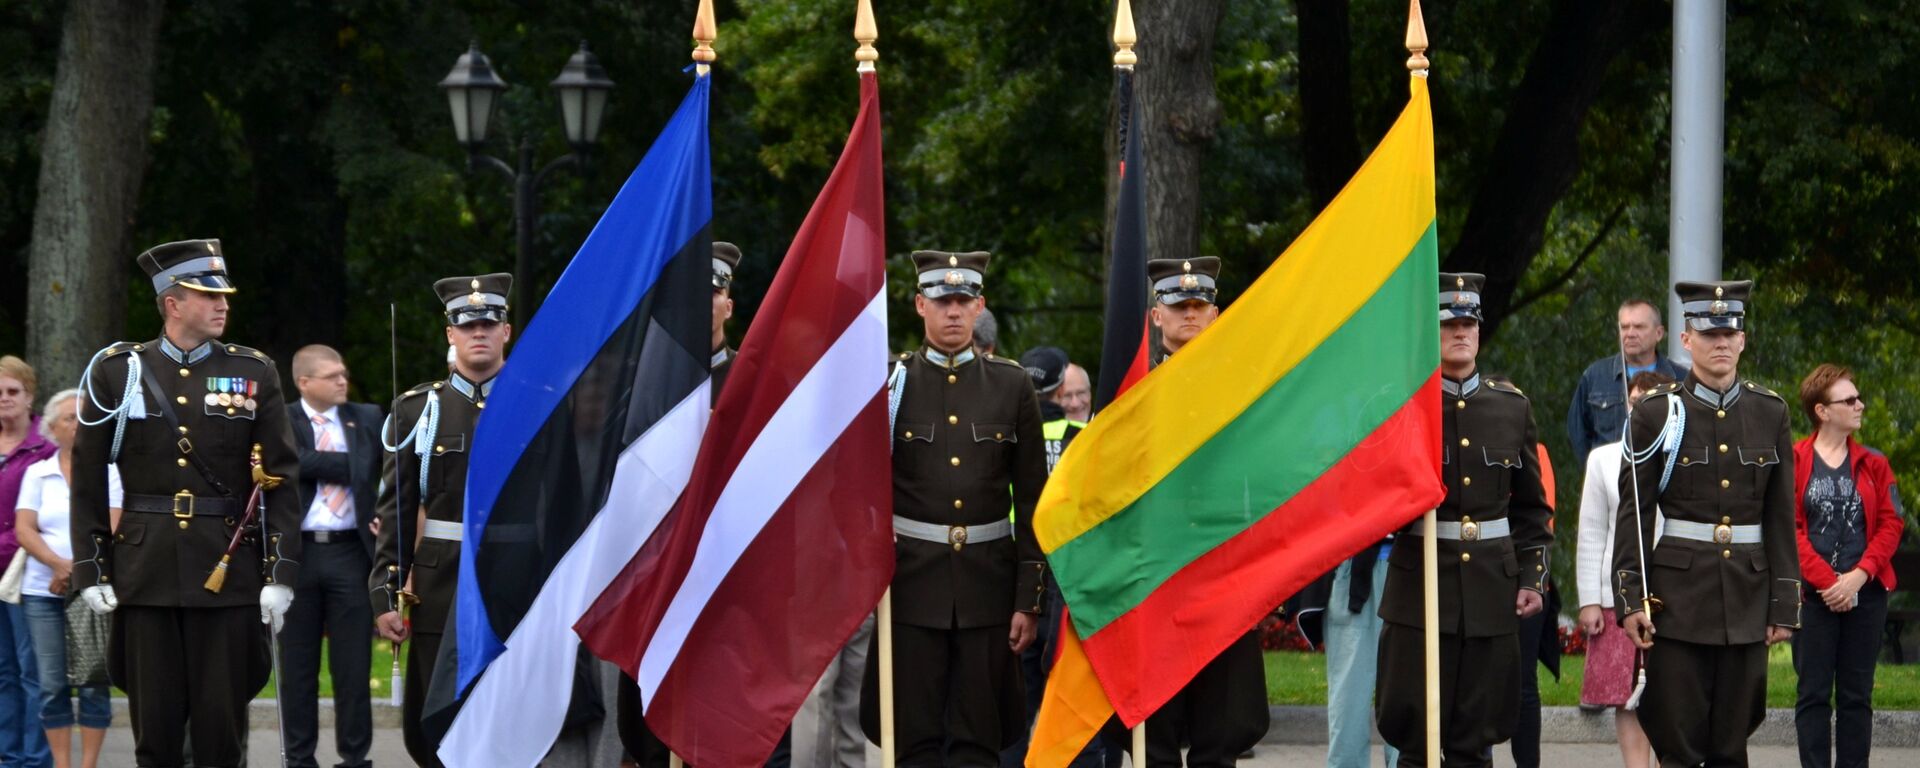 Флаги Эстонии, Латвии и Литвы. - Sputnik Латвия, 1920, 06.09.2016